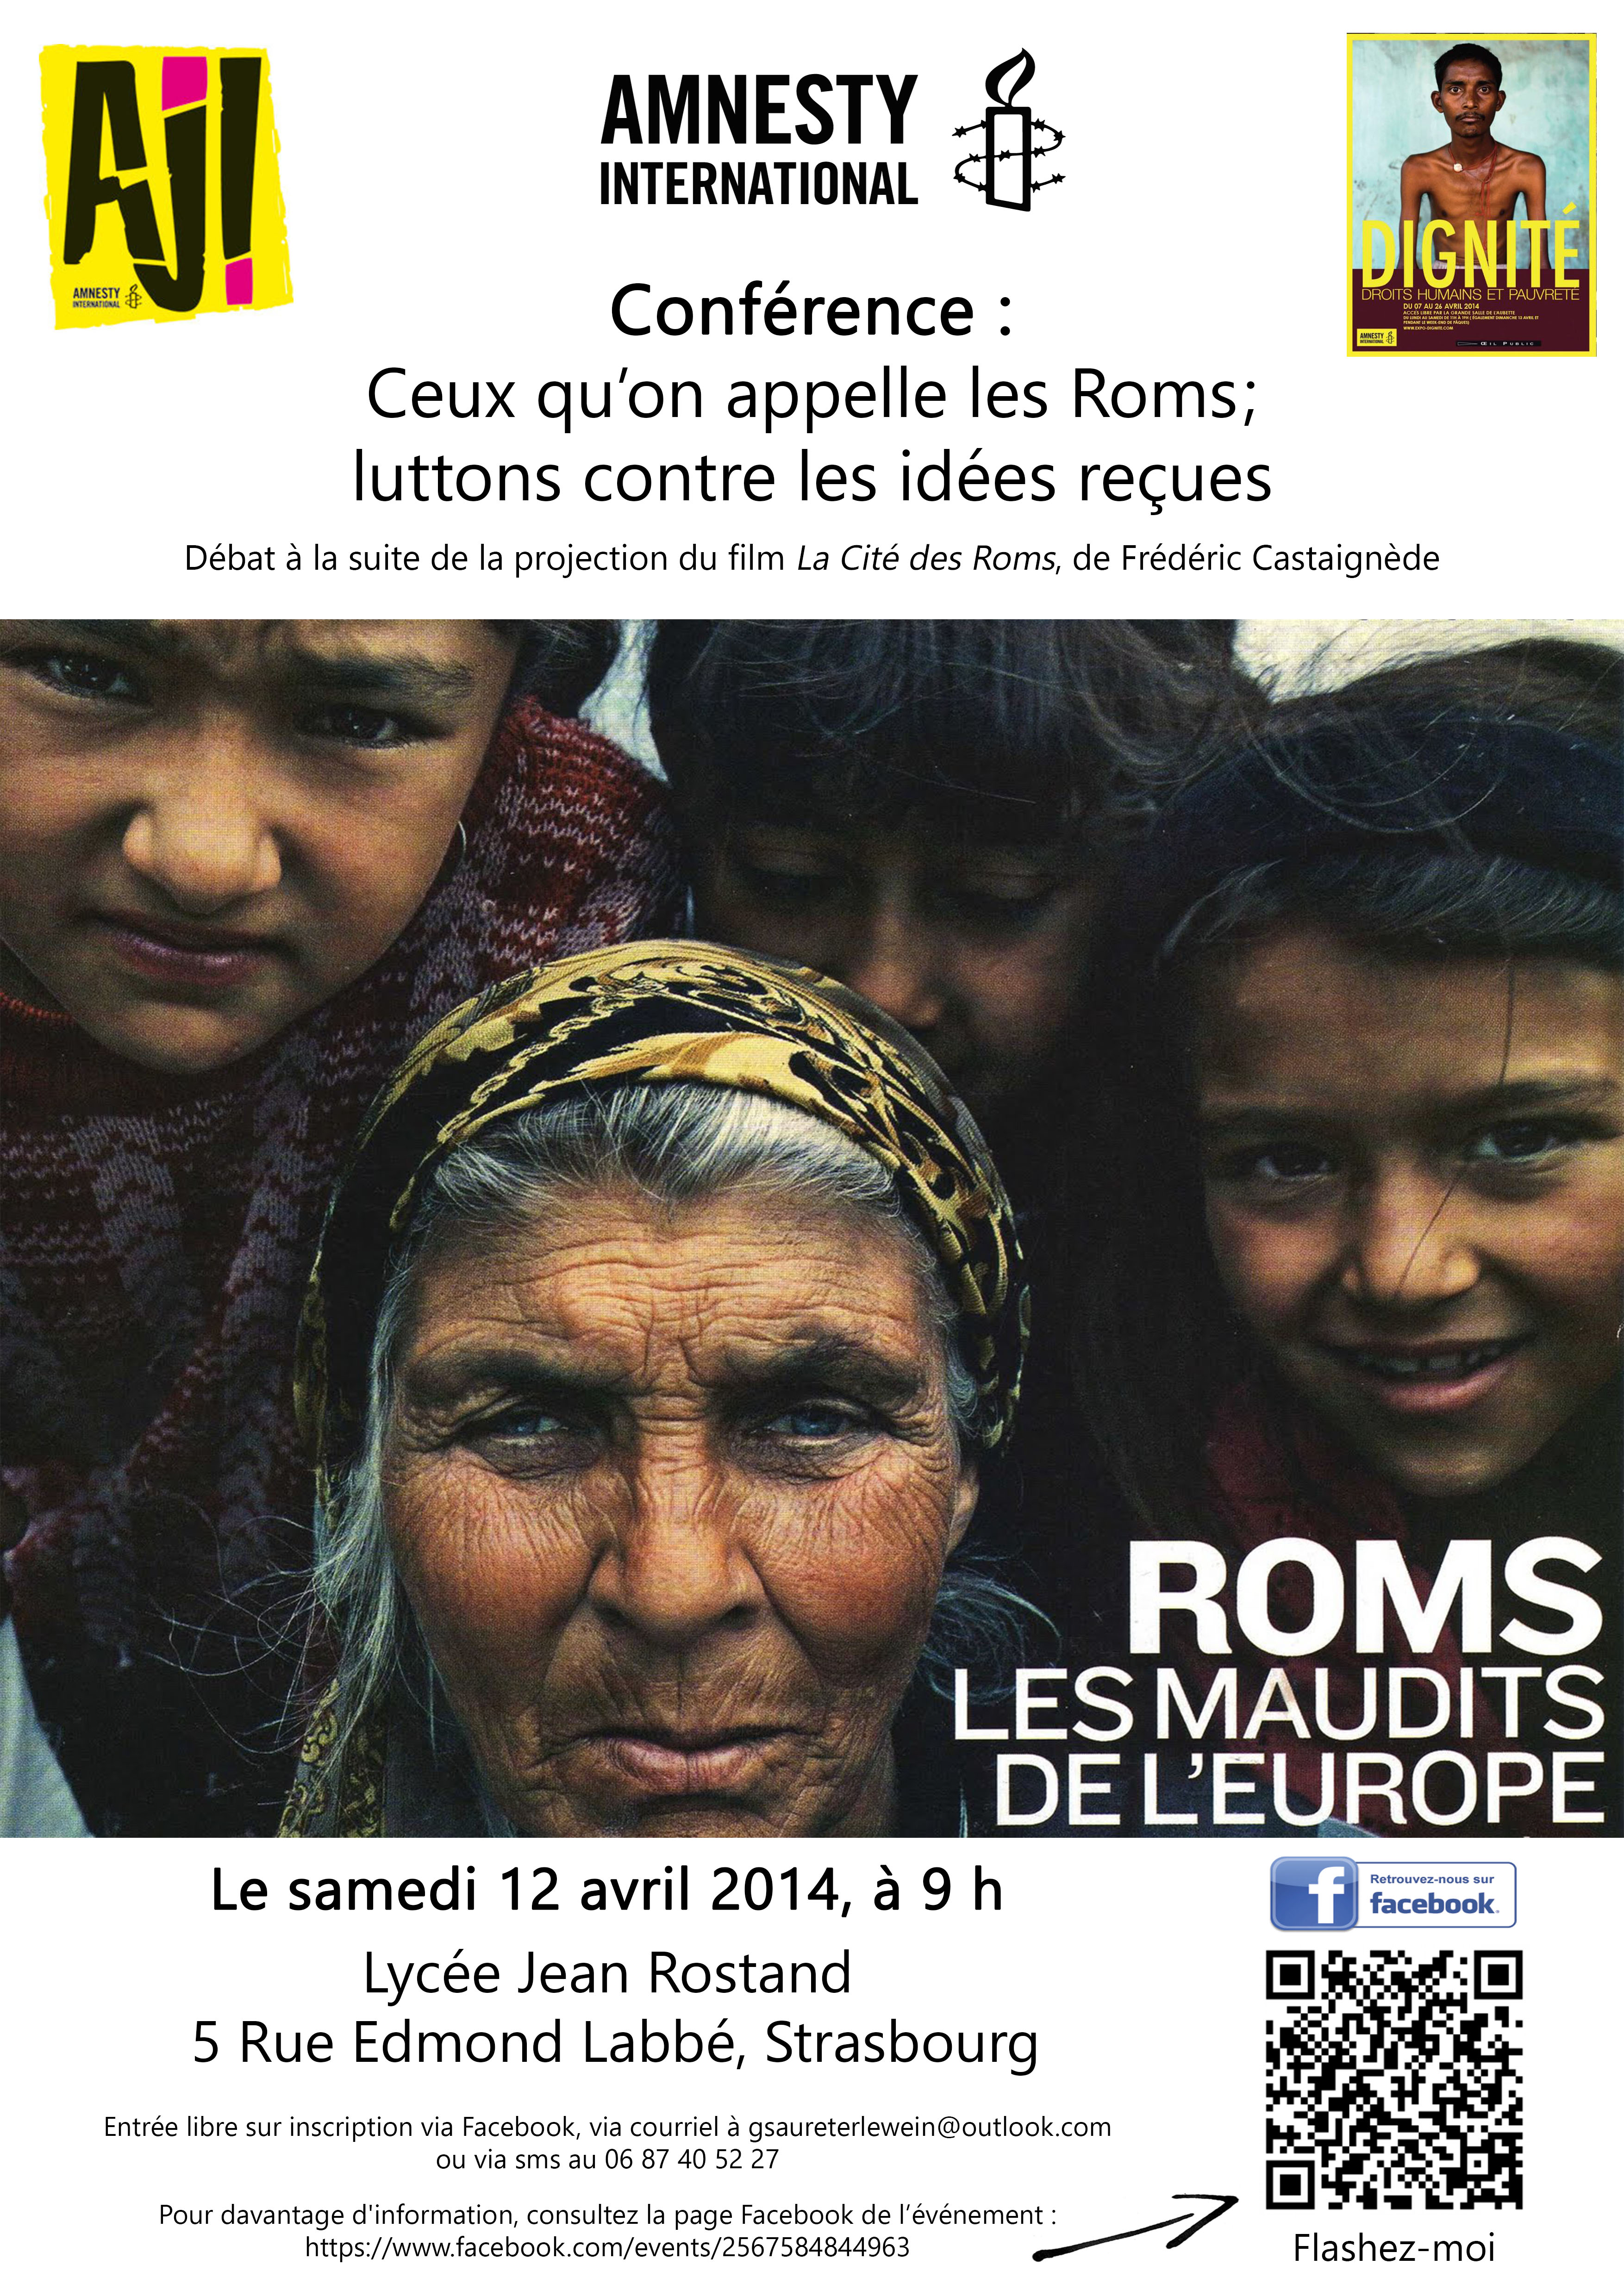 Le proviseur du lycée Jean Rostand annule et reporte une conférence sur les Roms